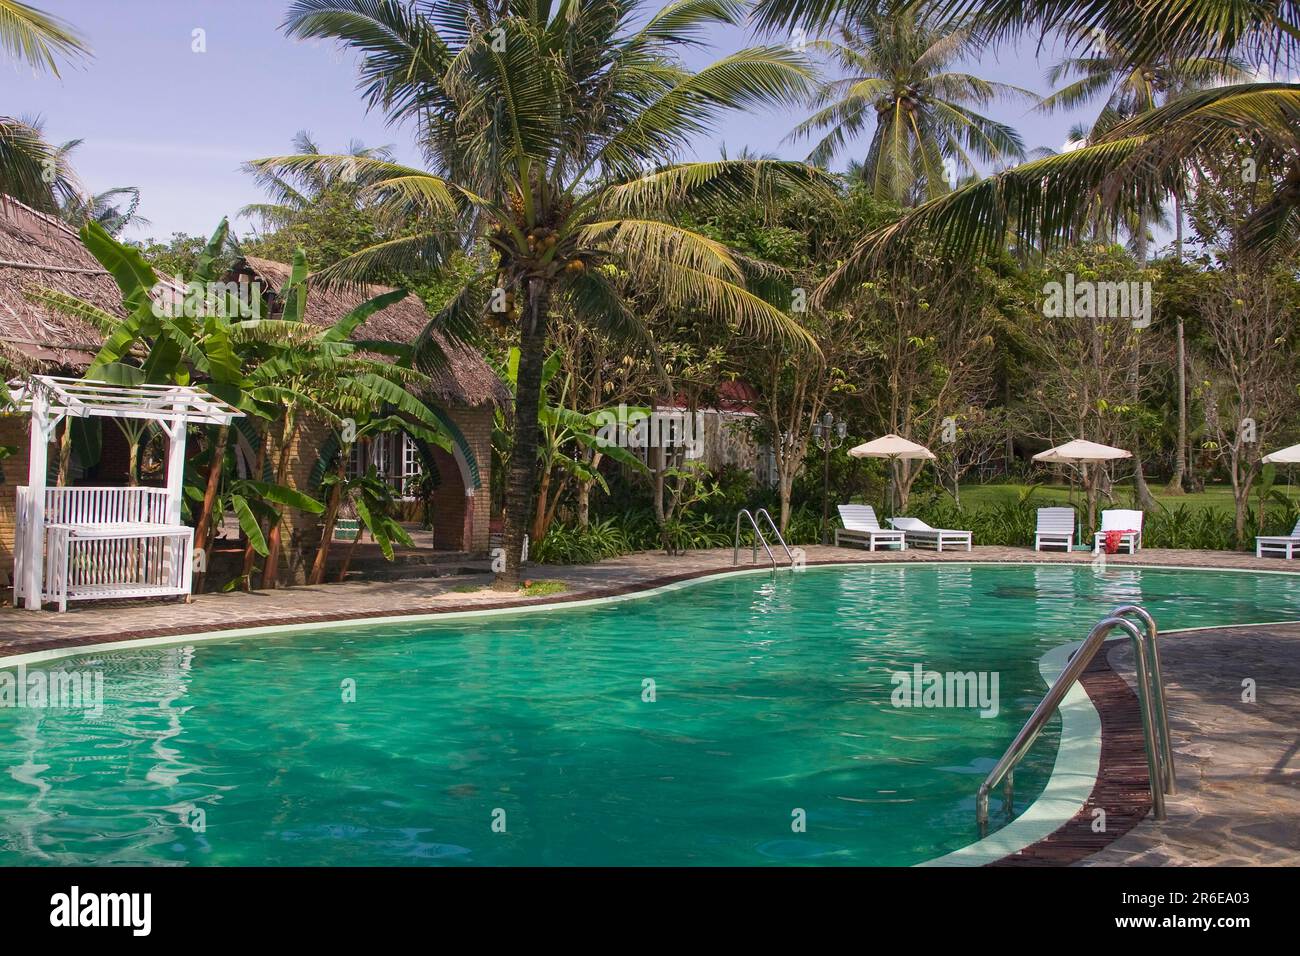 Swimming Pool, Kim Hoa Resort, Long Beach, Phu Quoc Island, Vietnam Stock Photo